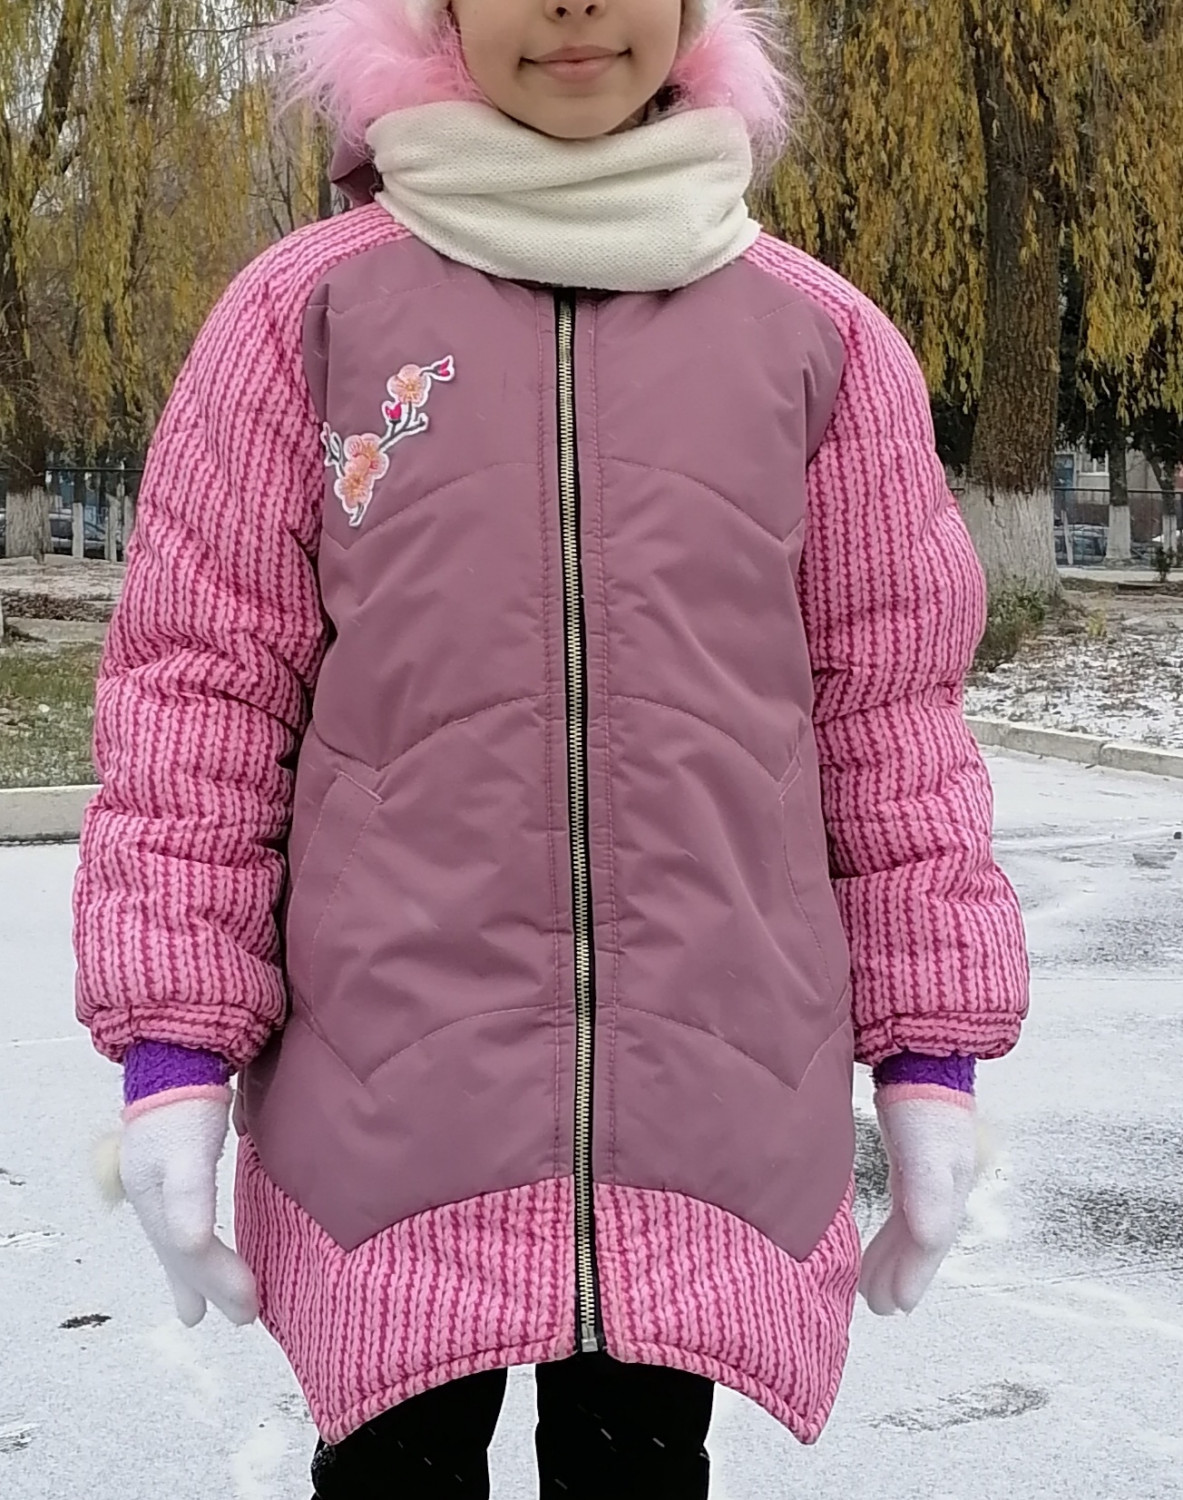 Выкройка зимней куртки-кокон для девочки KP091020